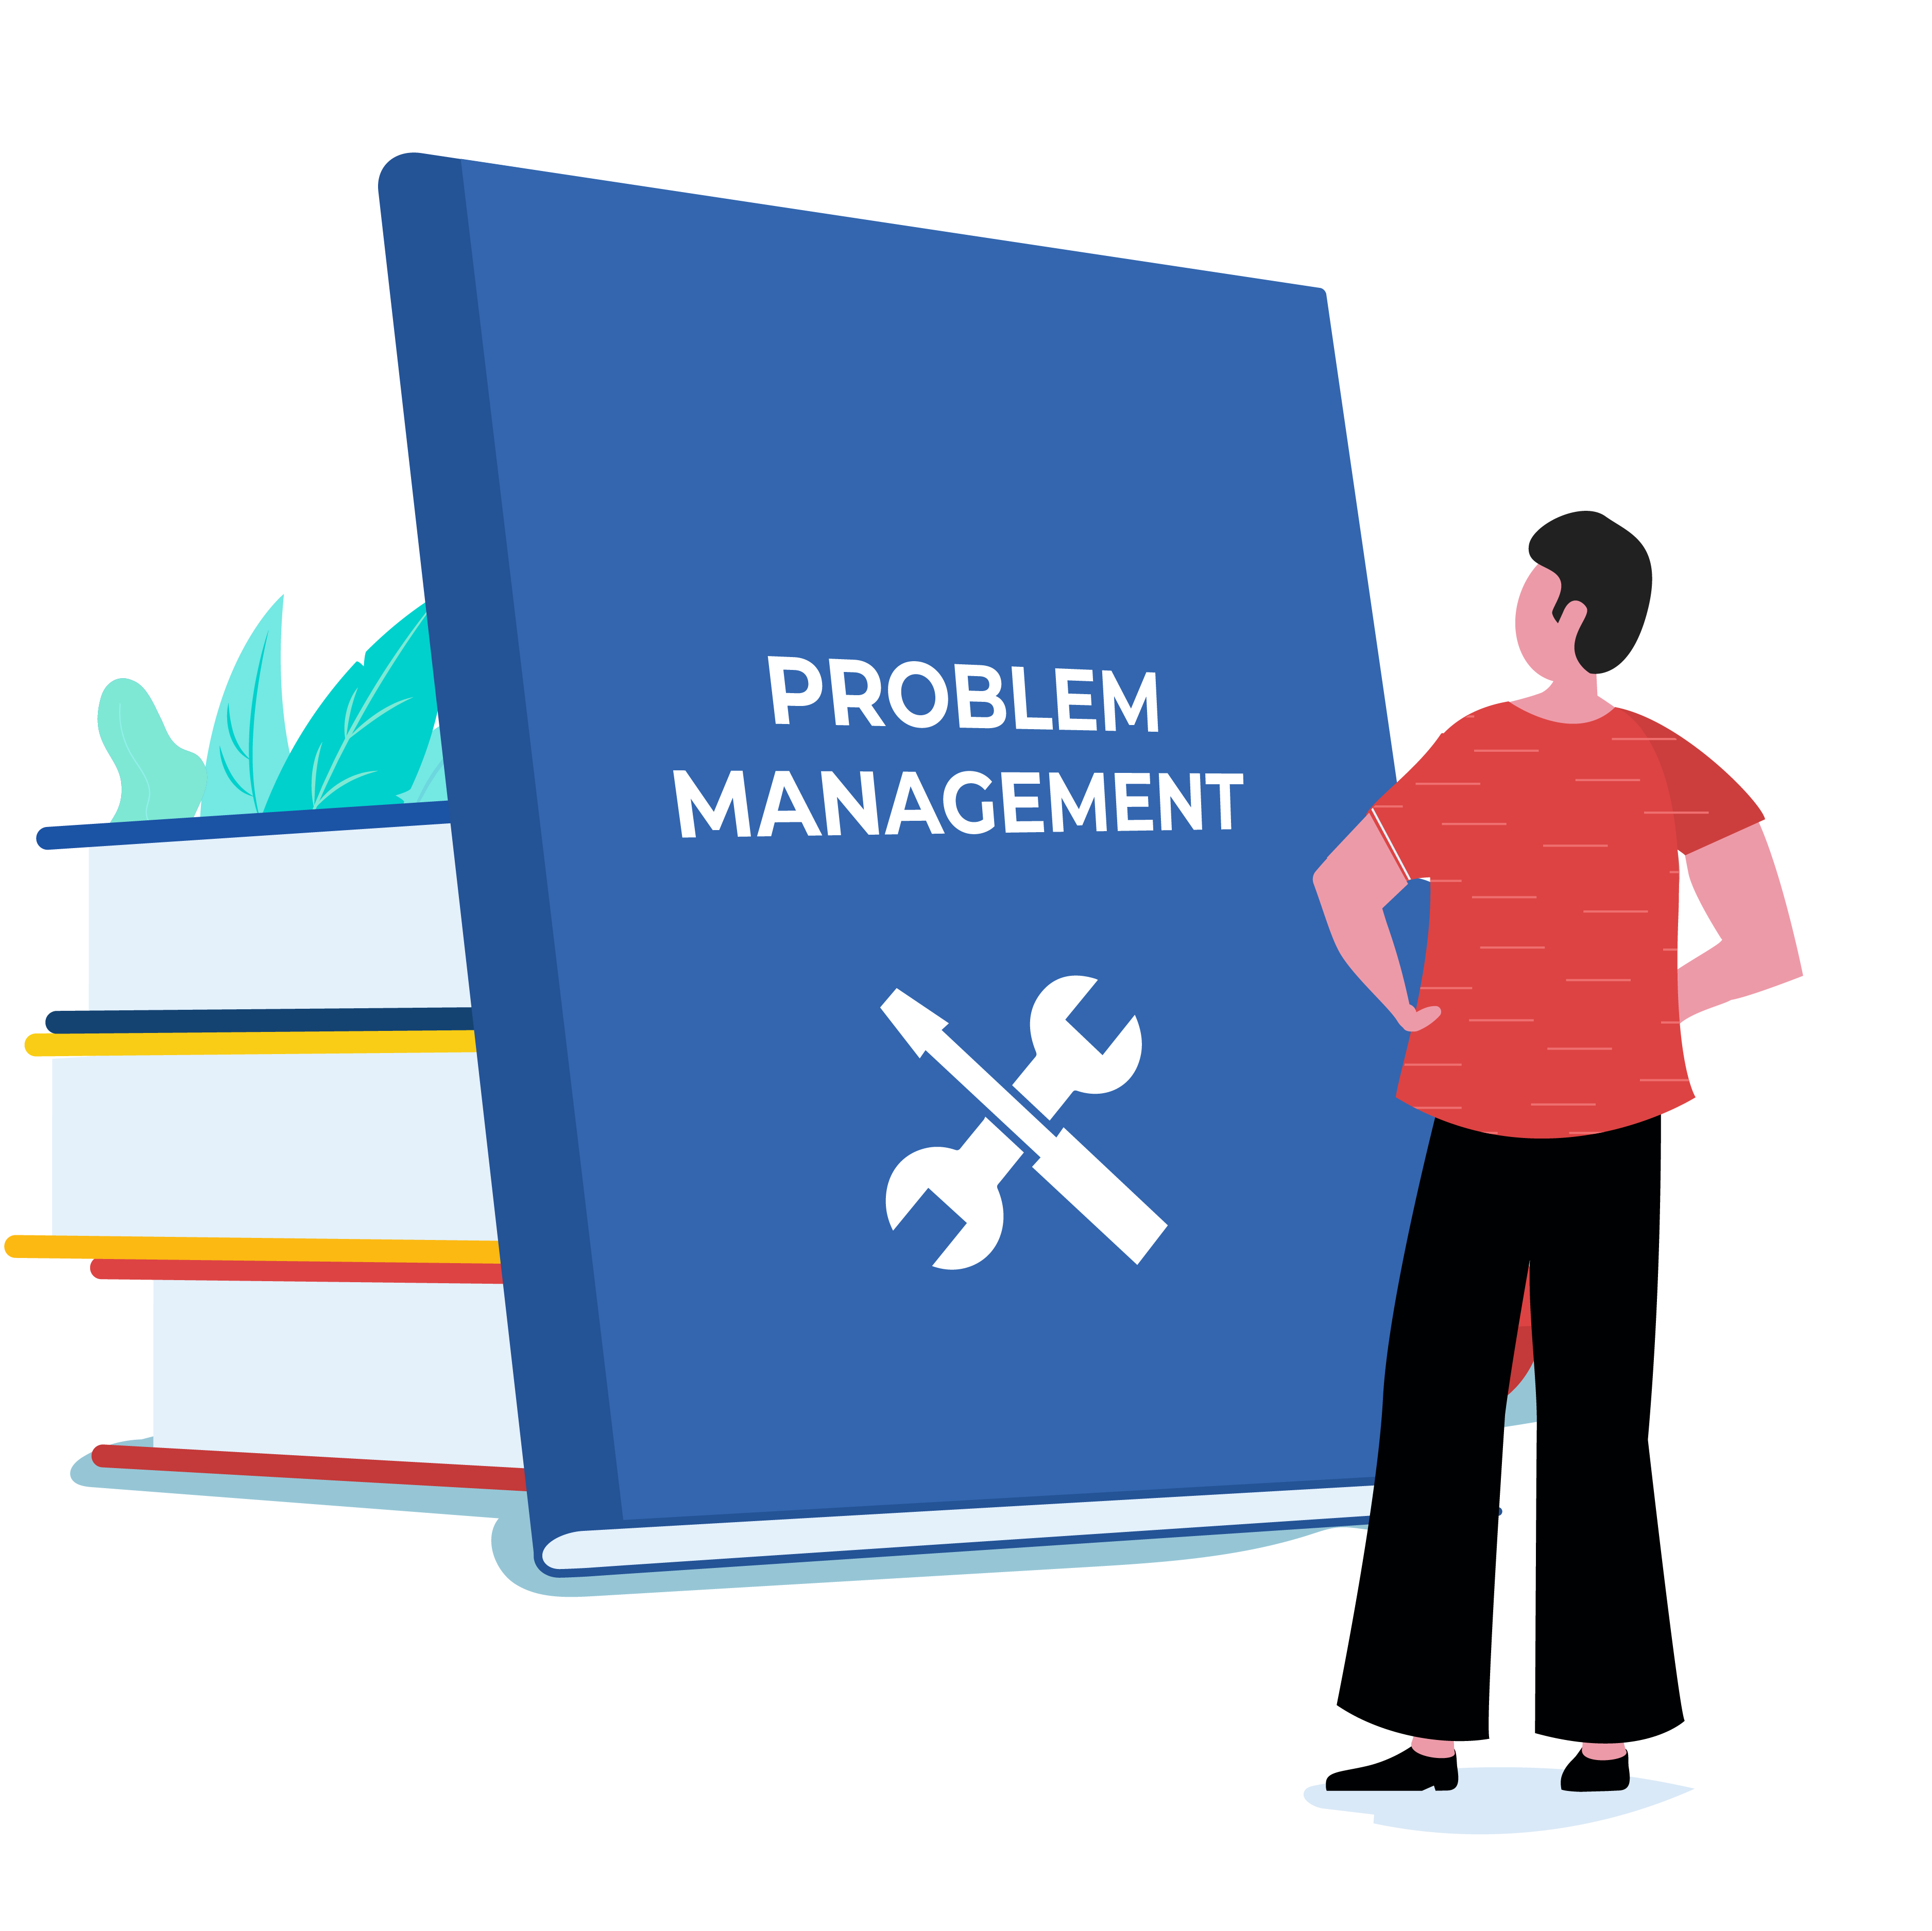 Problem management guide